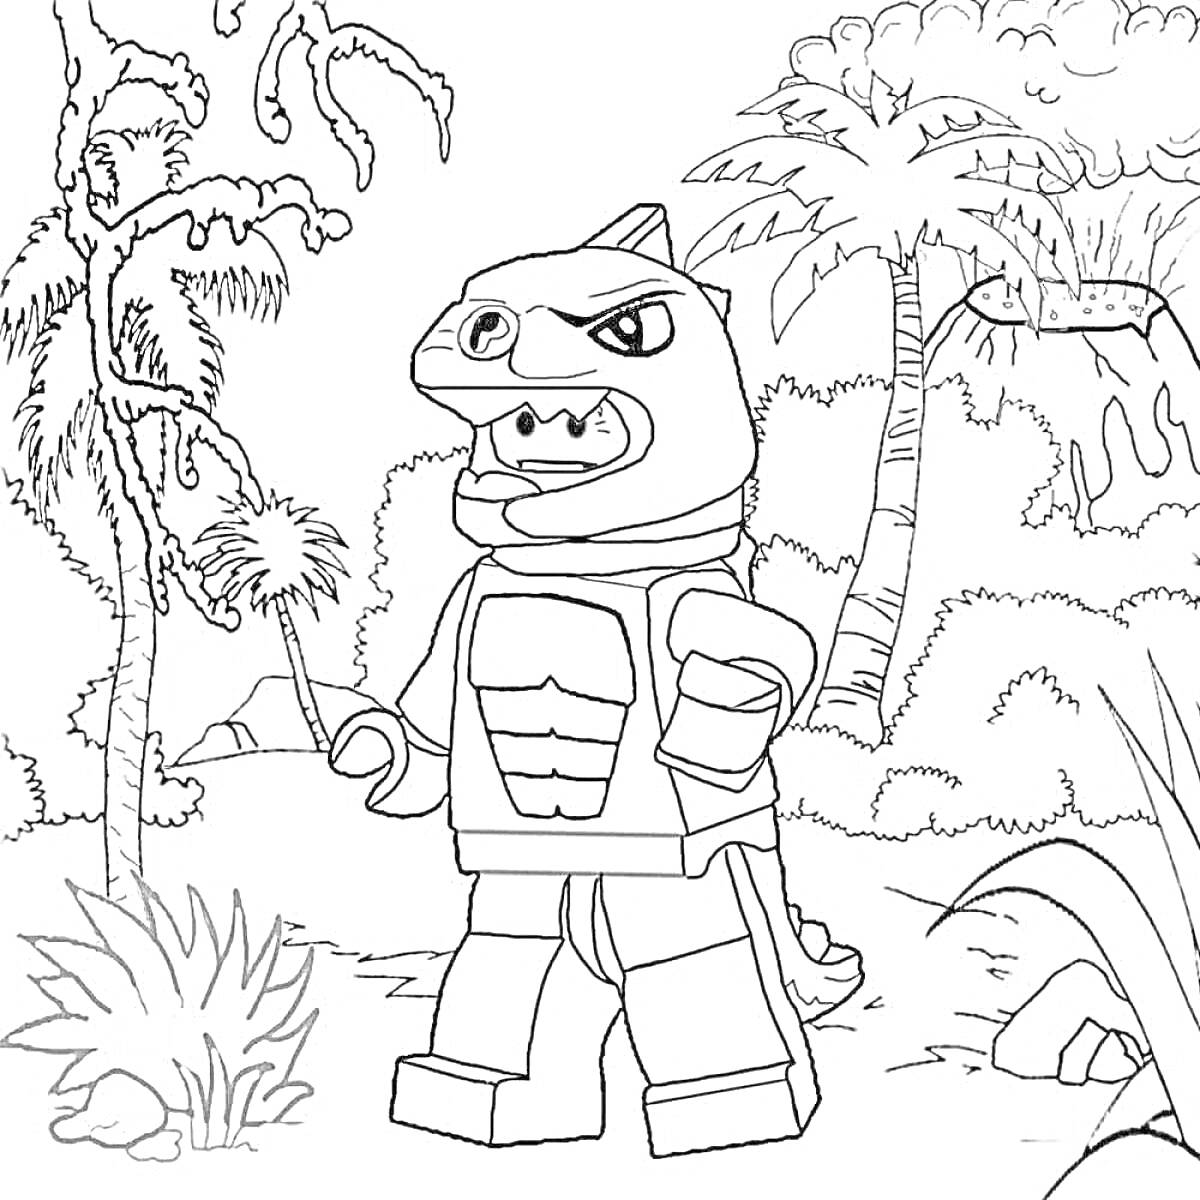 Раскраска Лего-динозавр в джунглях с пальмами и растительностью